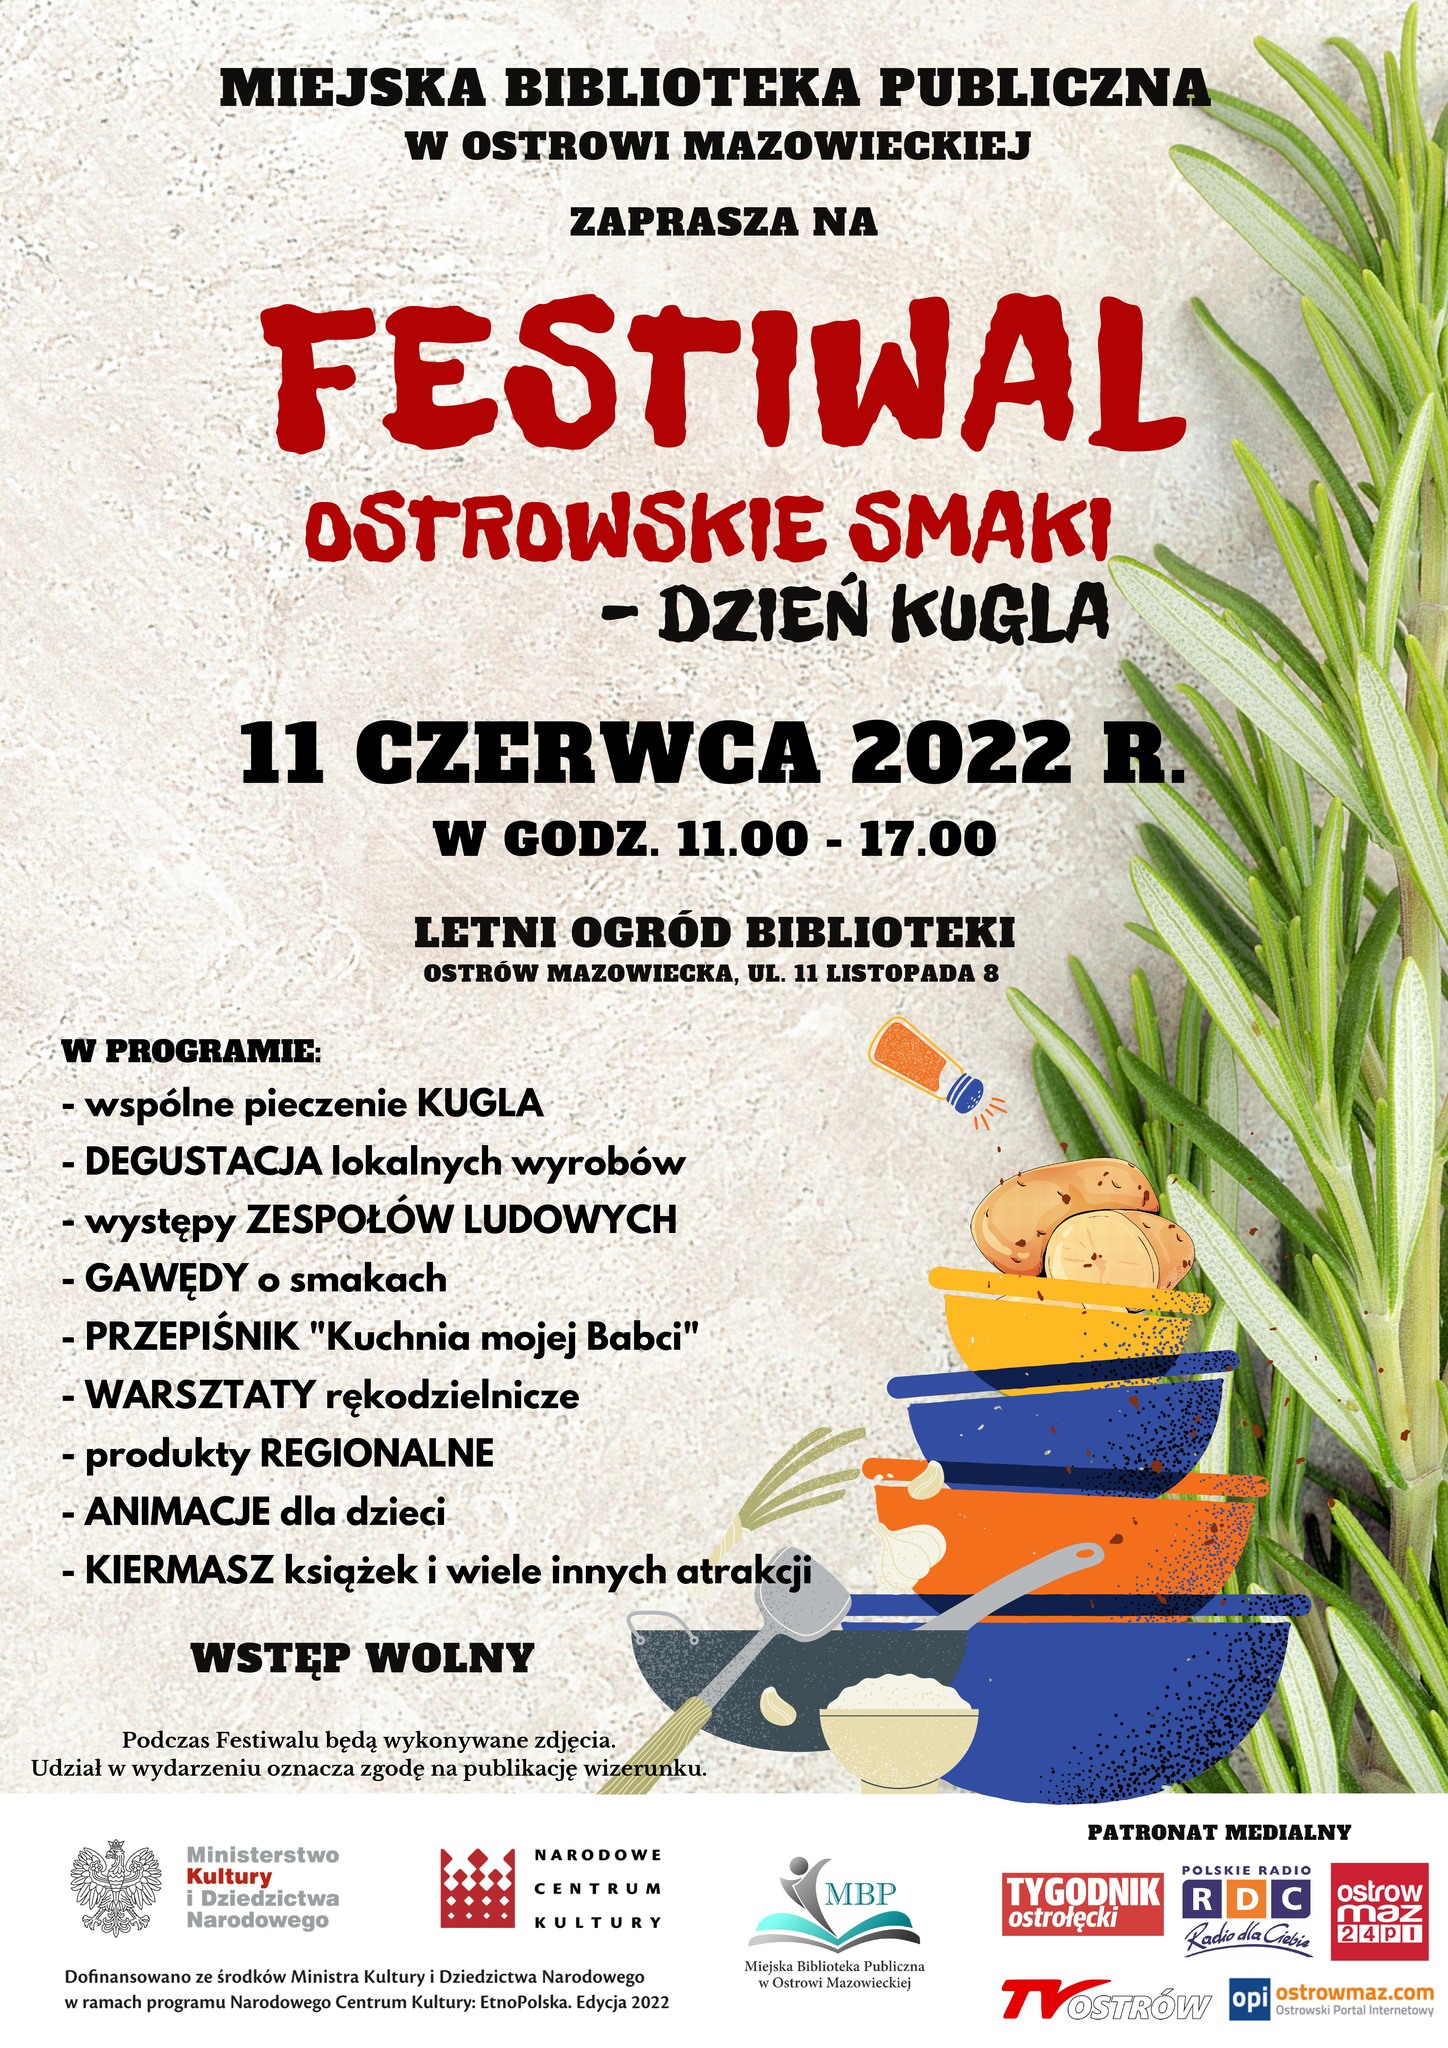 Plakat informacyjny dotyczący FESTIWAL &quot;Ostrowskie smaki&quot; dzień kugla w dniu 11 czerwca 2022 roku w godzinach od 11 do 17 w letnim ogrodzie biblioteki publicznej w ostrowi mazowieckiej, ulica 11 listopada 8  wstep wolny  